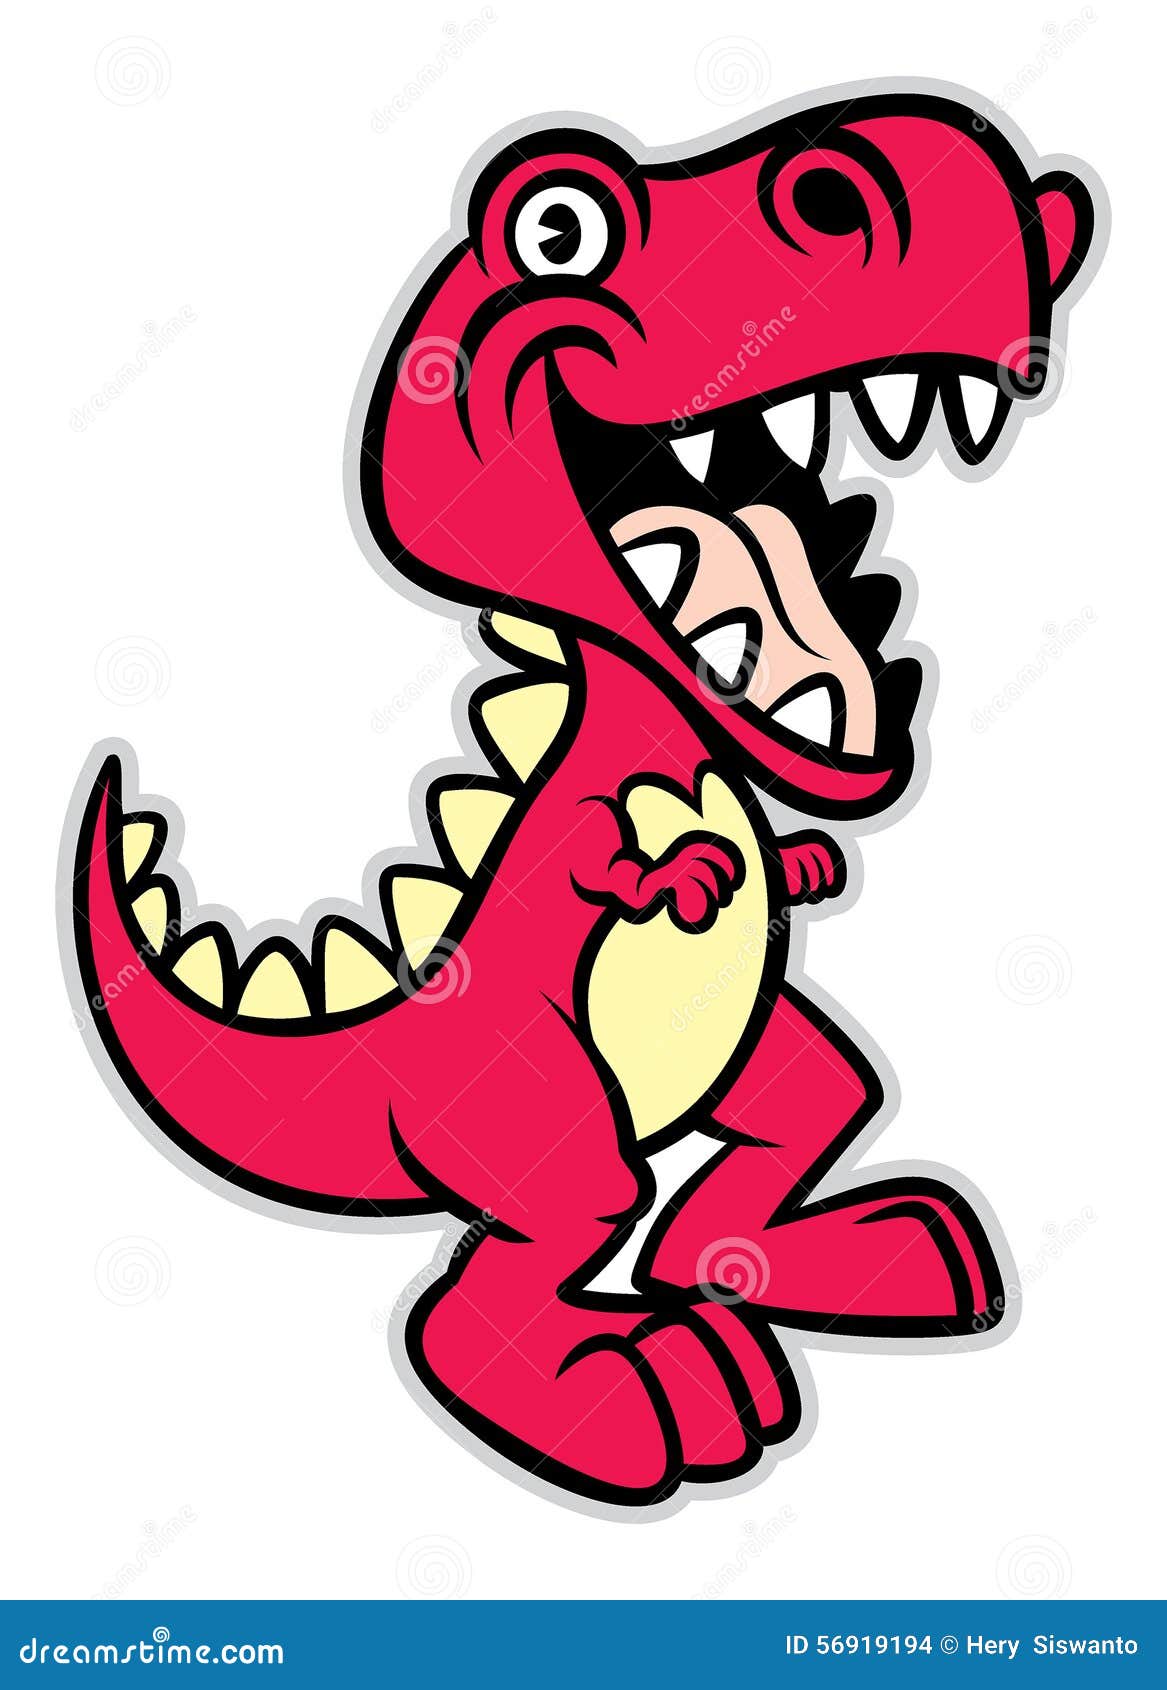 Cartoon T Rex Dinosaur Stock Illustrations – 1,756 Cartoon T Rex Dinosaur  Stock Illustrations, Vectors & Clipart - Dreamstime